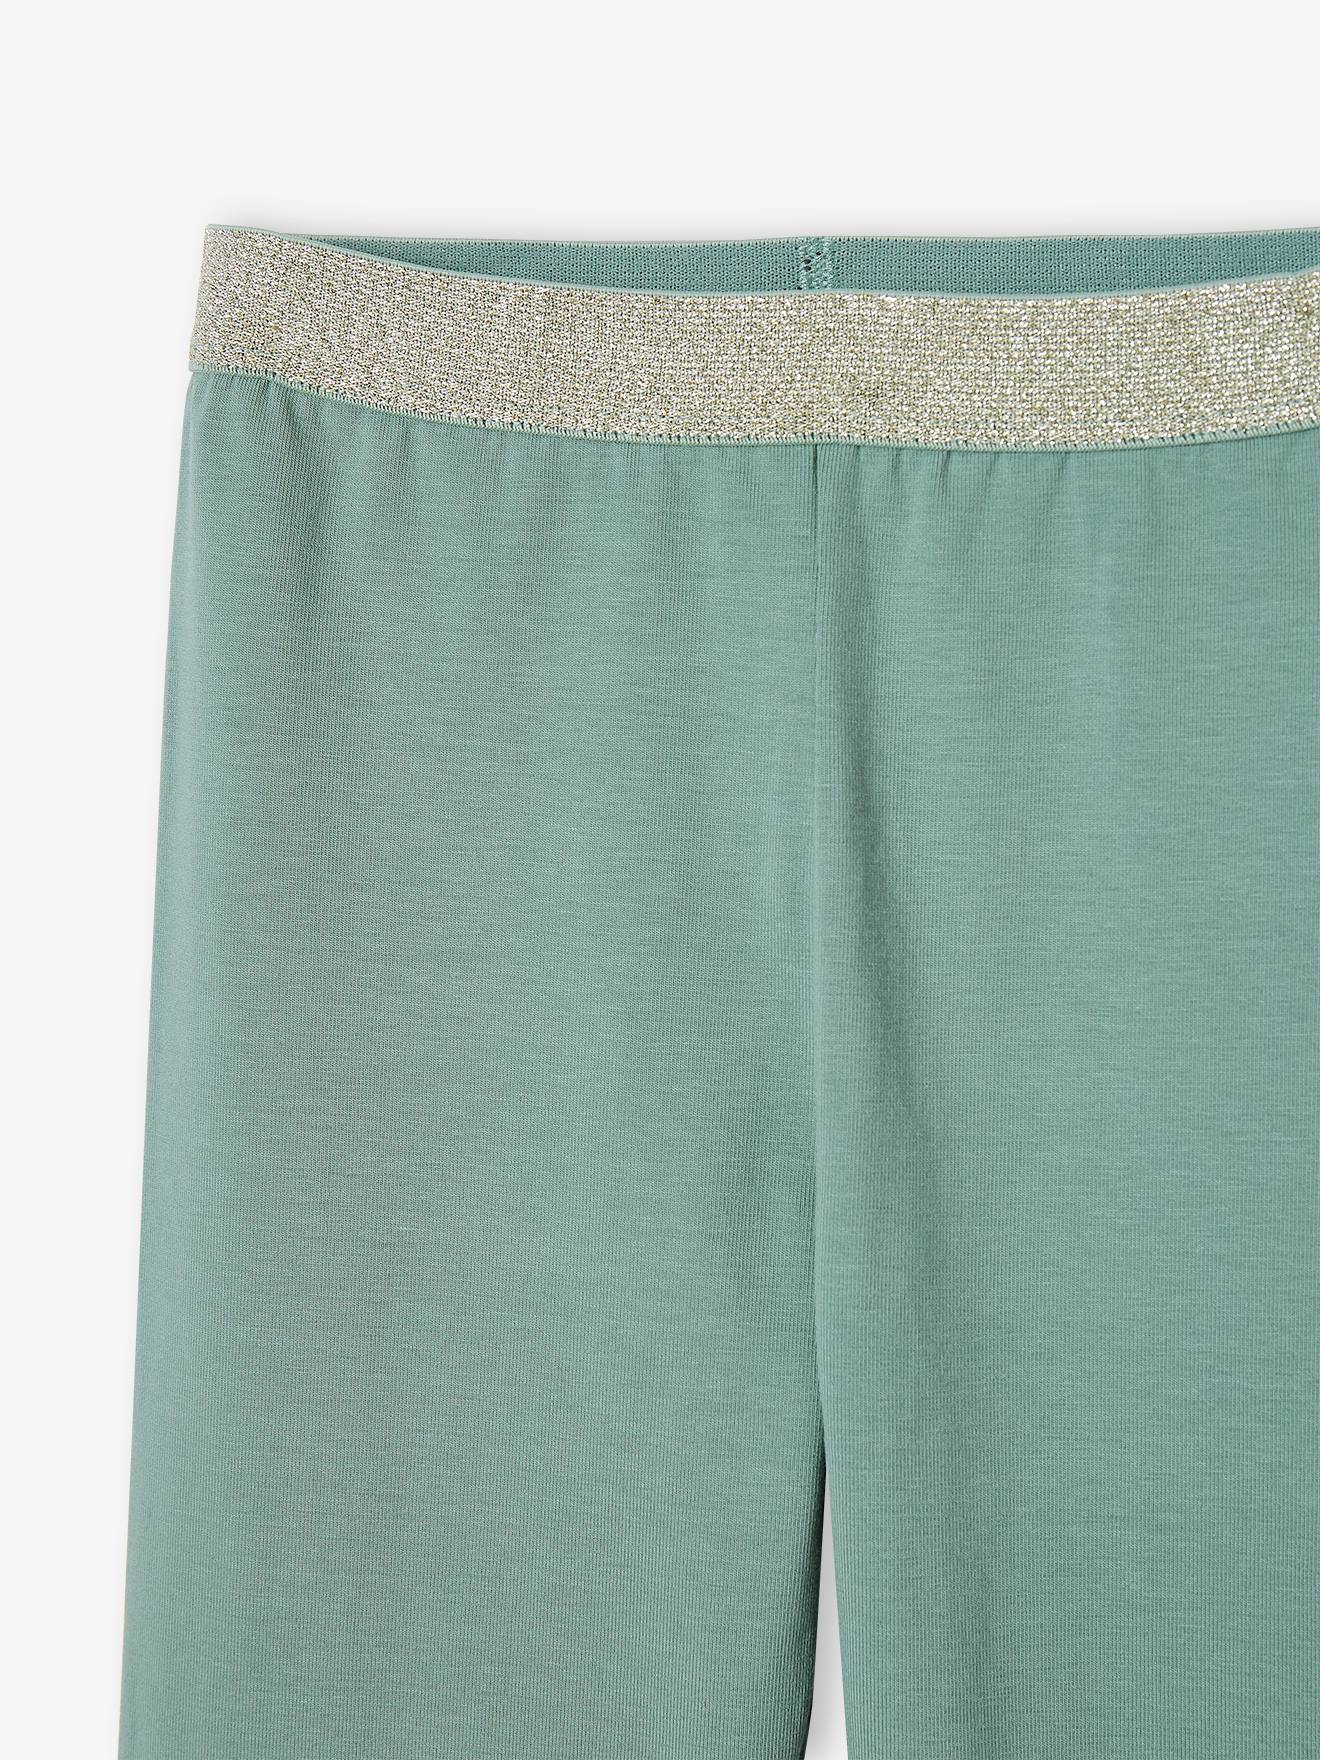 Elasticated Iridescent Plain Leggings for Girls - emerald green, Girls